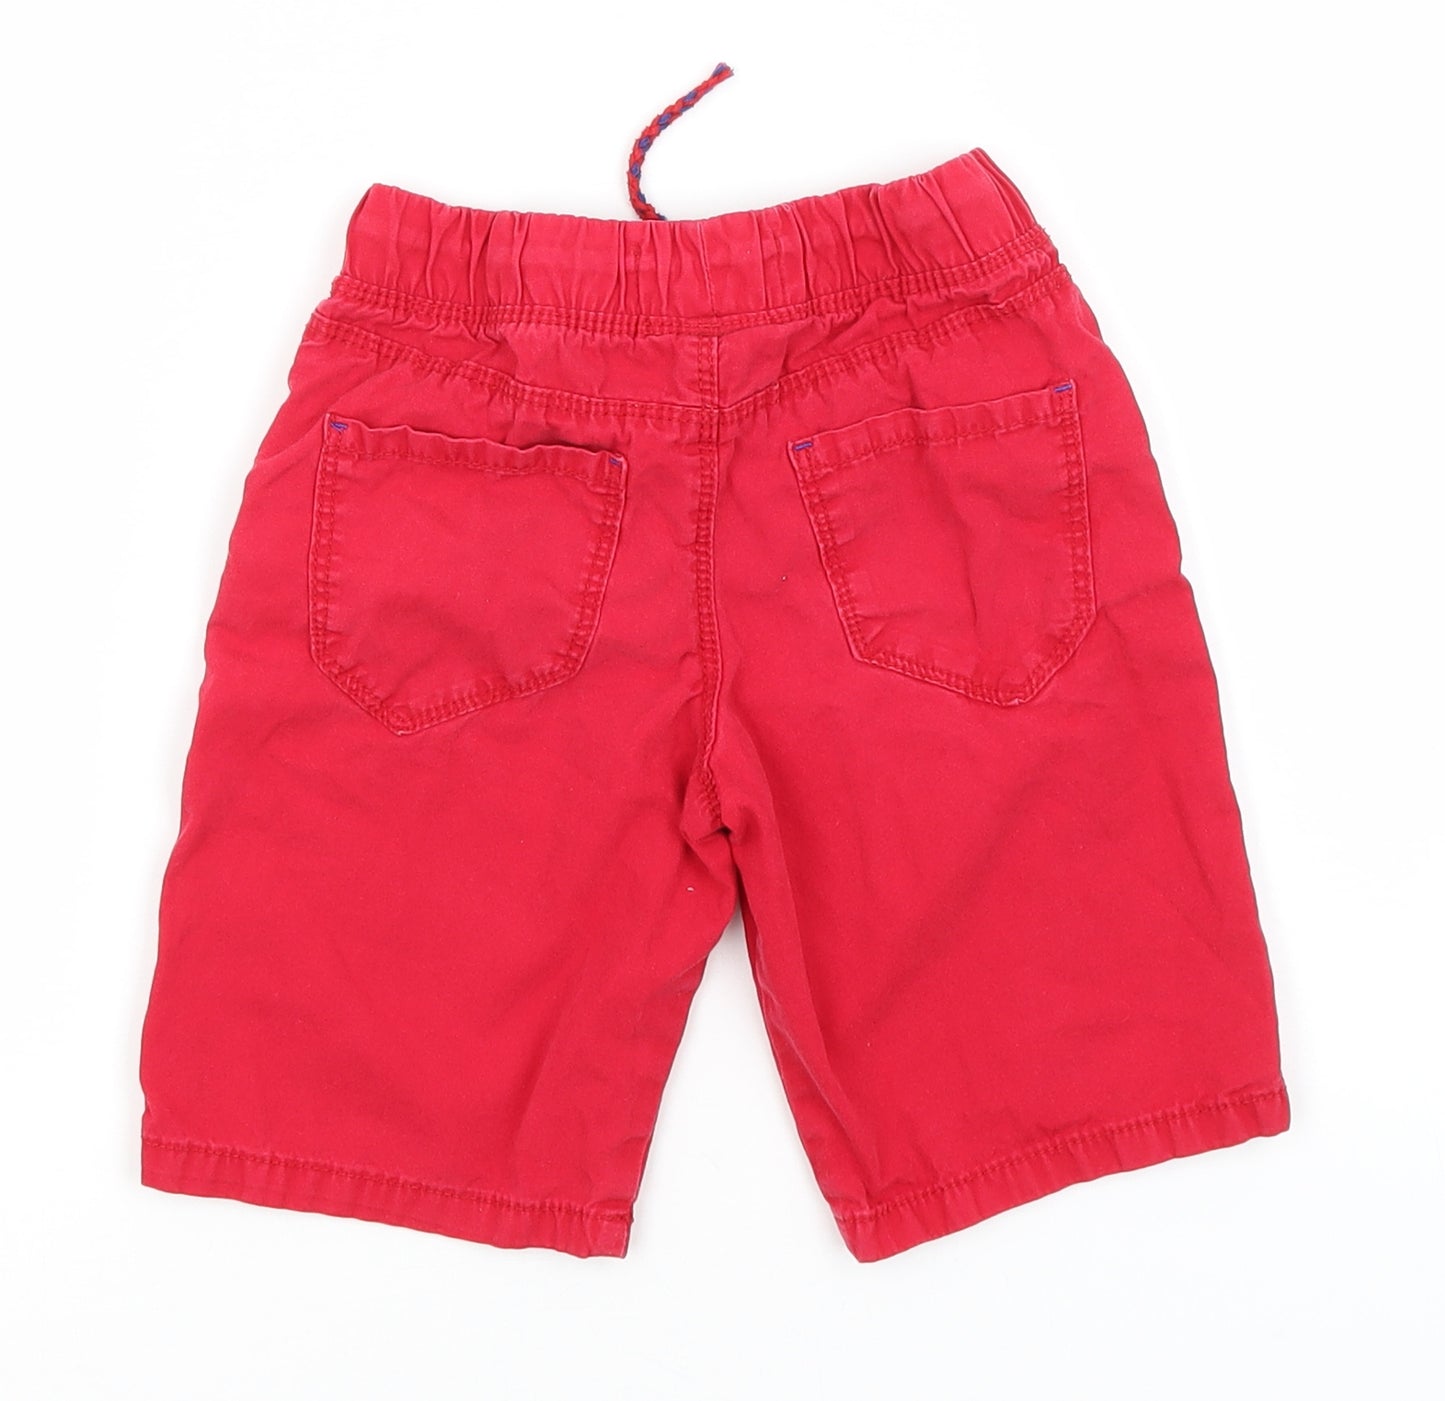 Rebel Girls Red   Cargo Shorts Size 4-5 Years  Regular